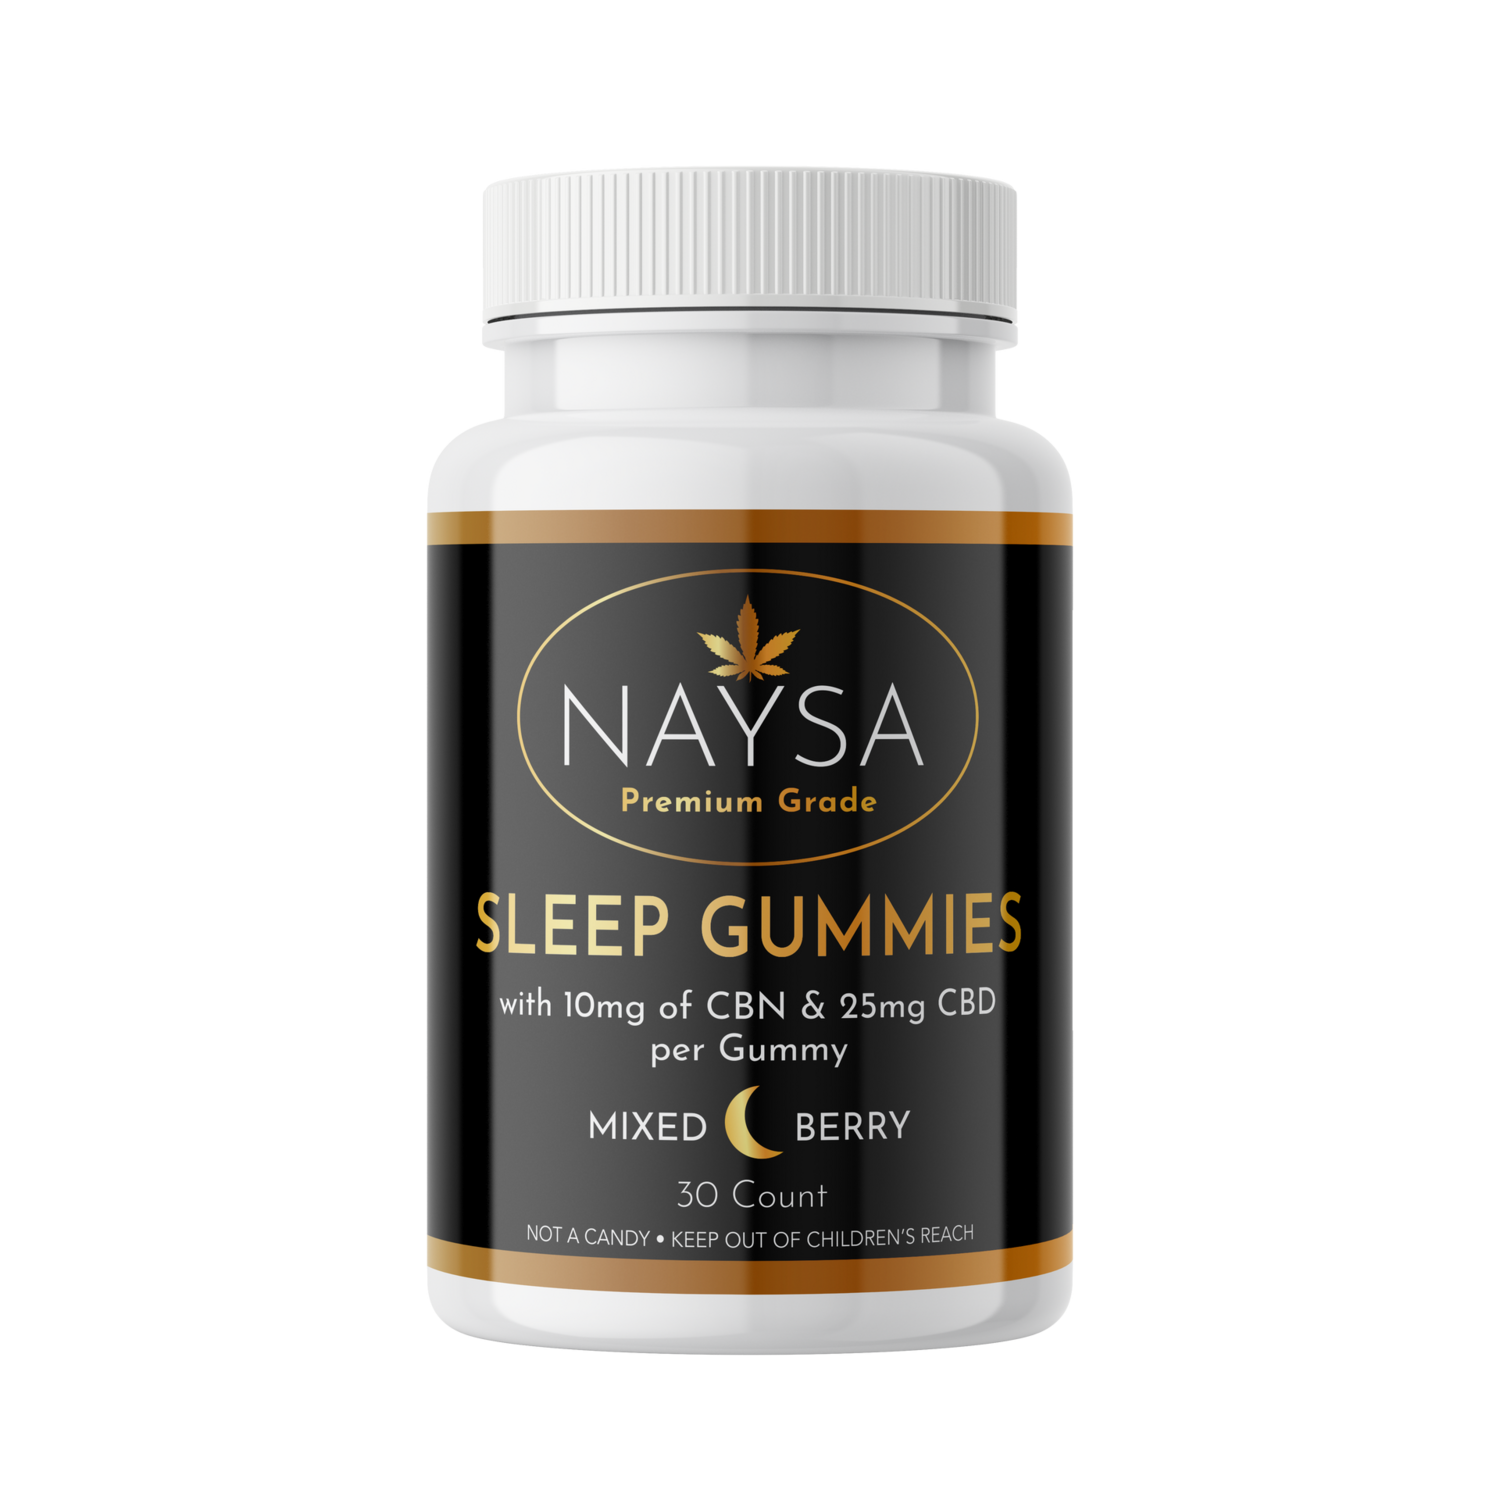 Naysa Sleep Gummies